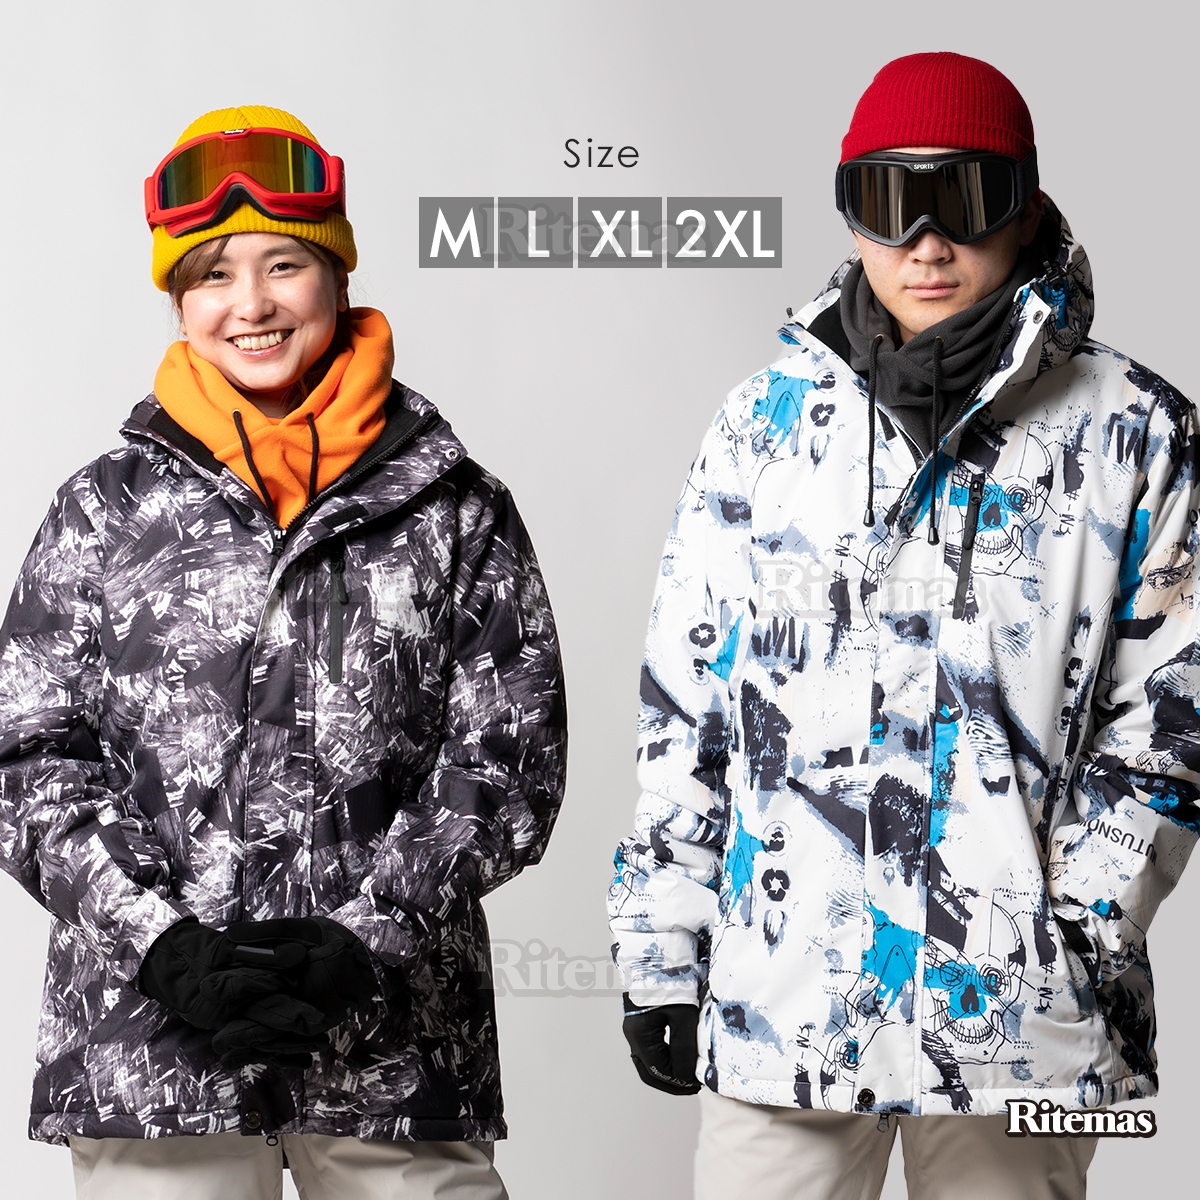  snowboard wear snow wear snowboard we ASCII wear snow jacket snowboard snowboard ski men's lady's jacket . windshield snow waterproof heat insulation 